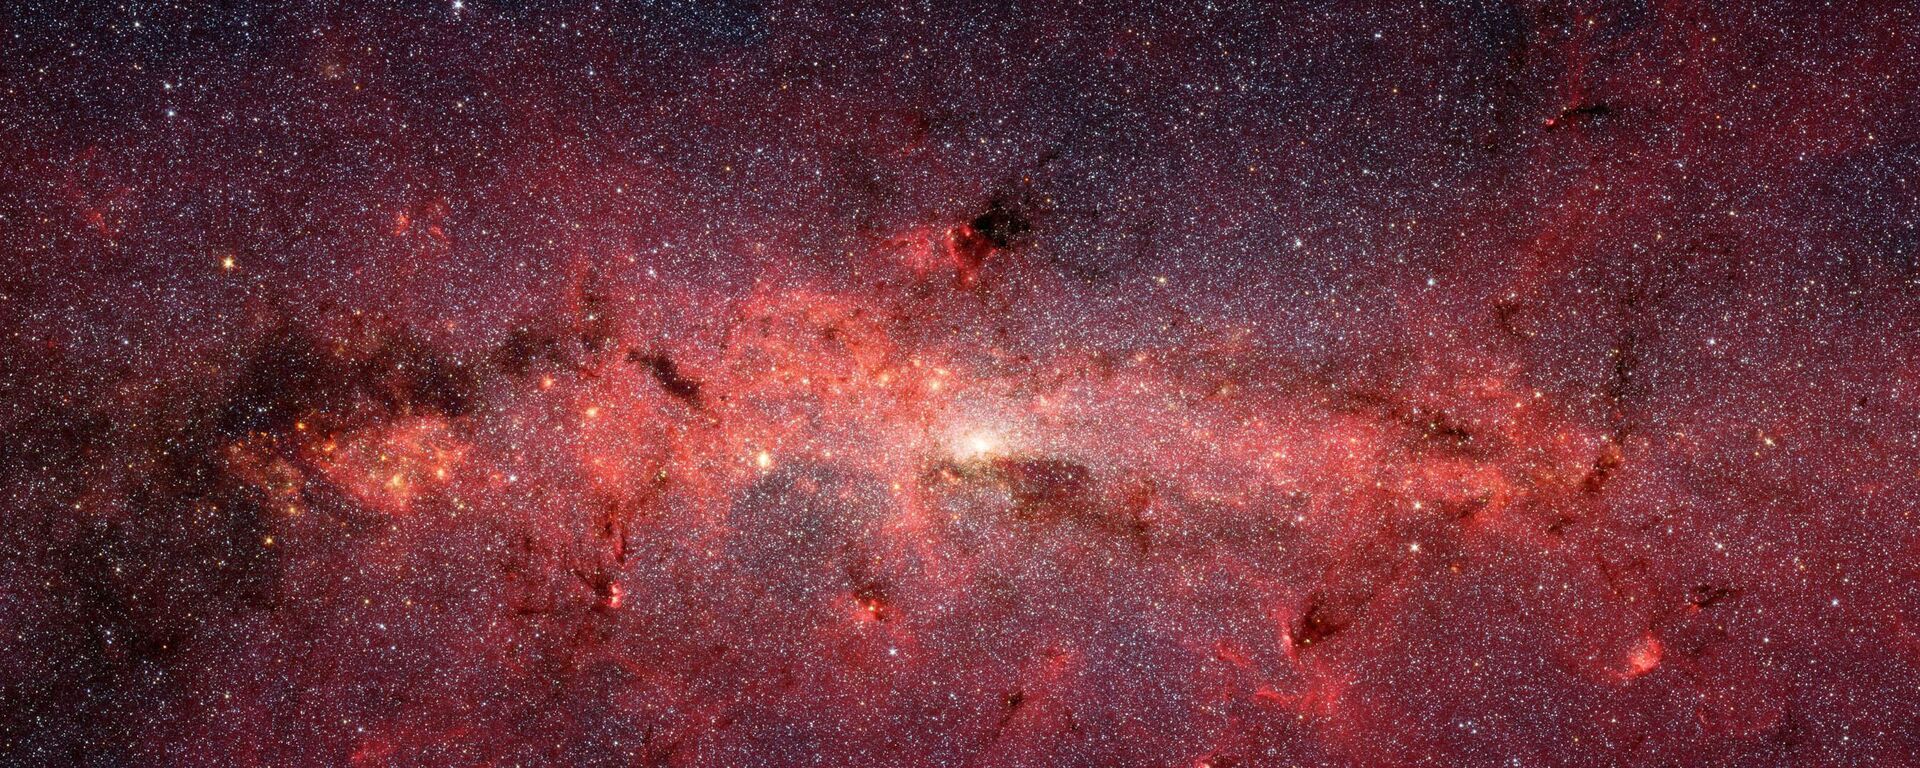 Галактический центр Млечного Пути, снятый телескопом Spitzer - Sputnik Узбекистан, 1920, 15.02.2021